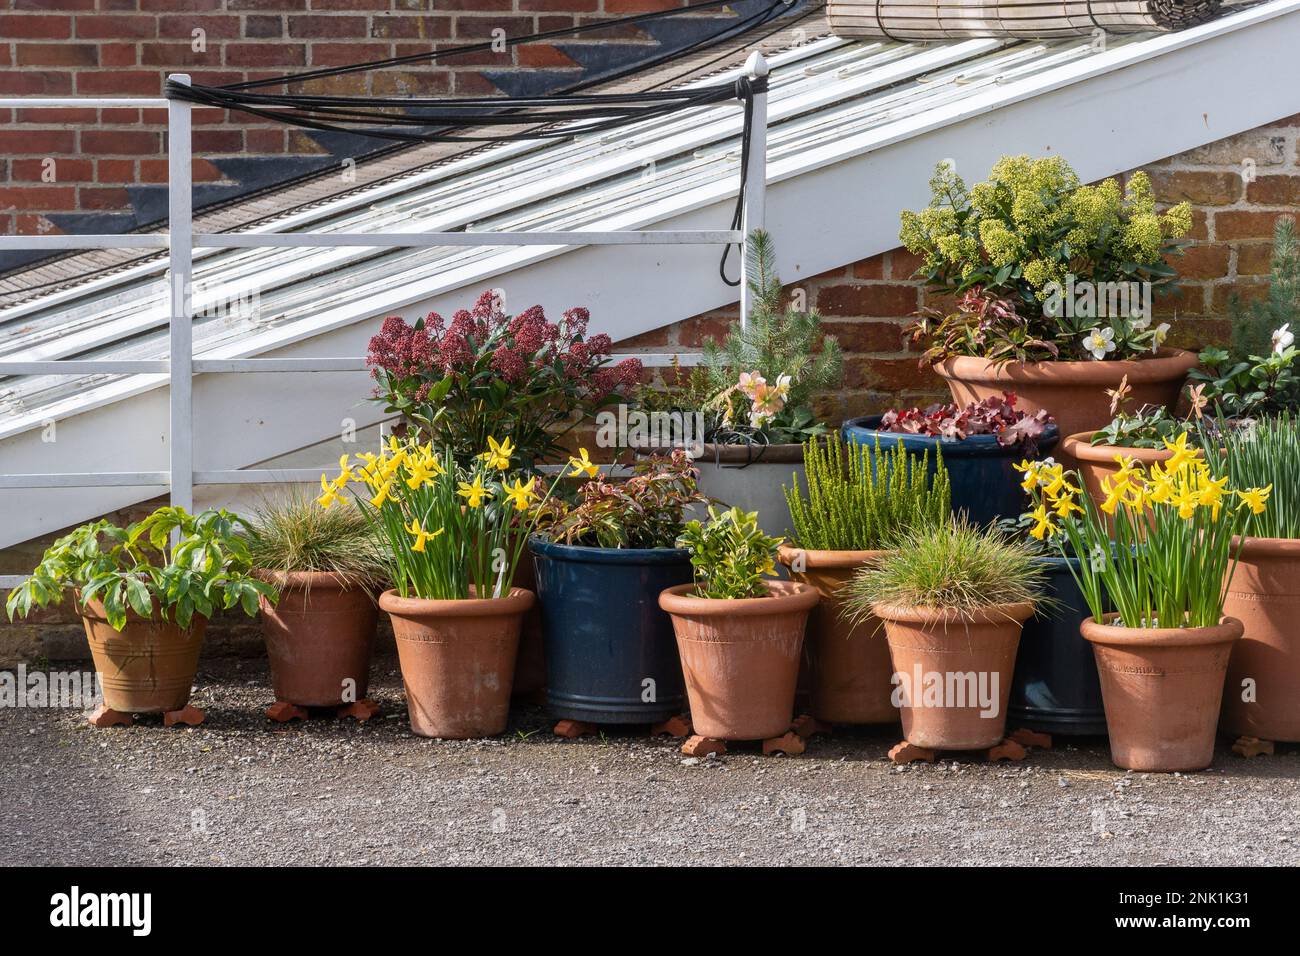 Mostra di bulbi e fiori primaverili, tra cui narcisi fioriti in pentole di terracotta, Inghilterra, Regno Unito Foto Stock